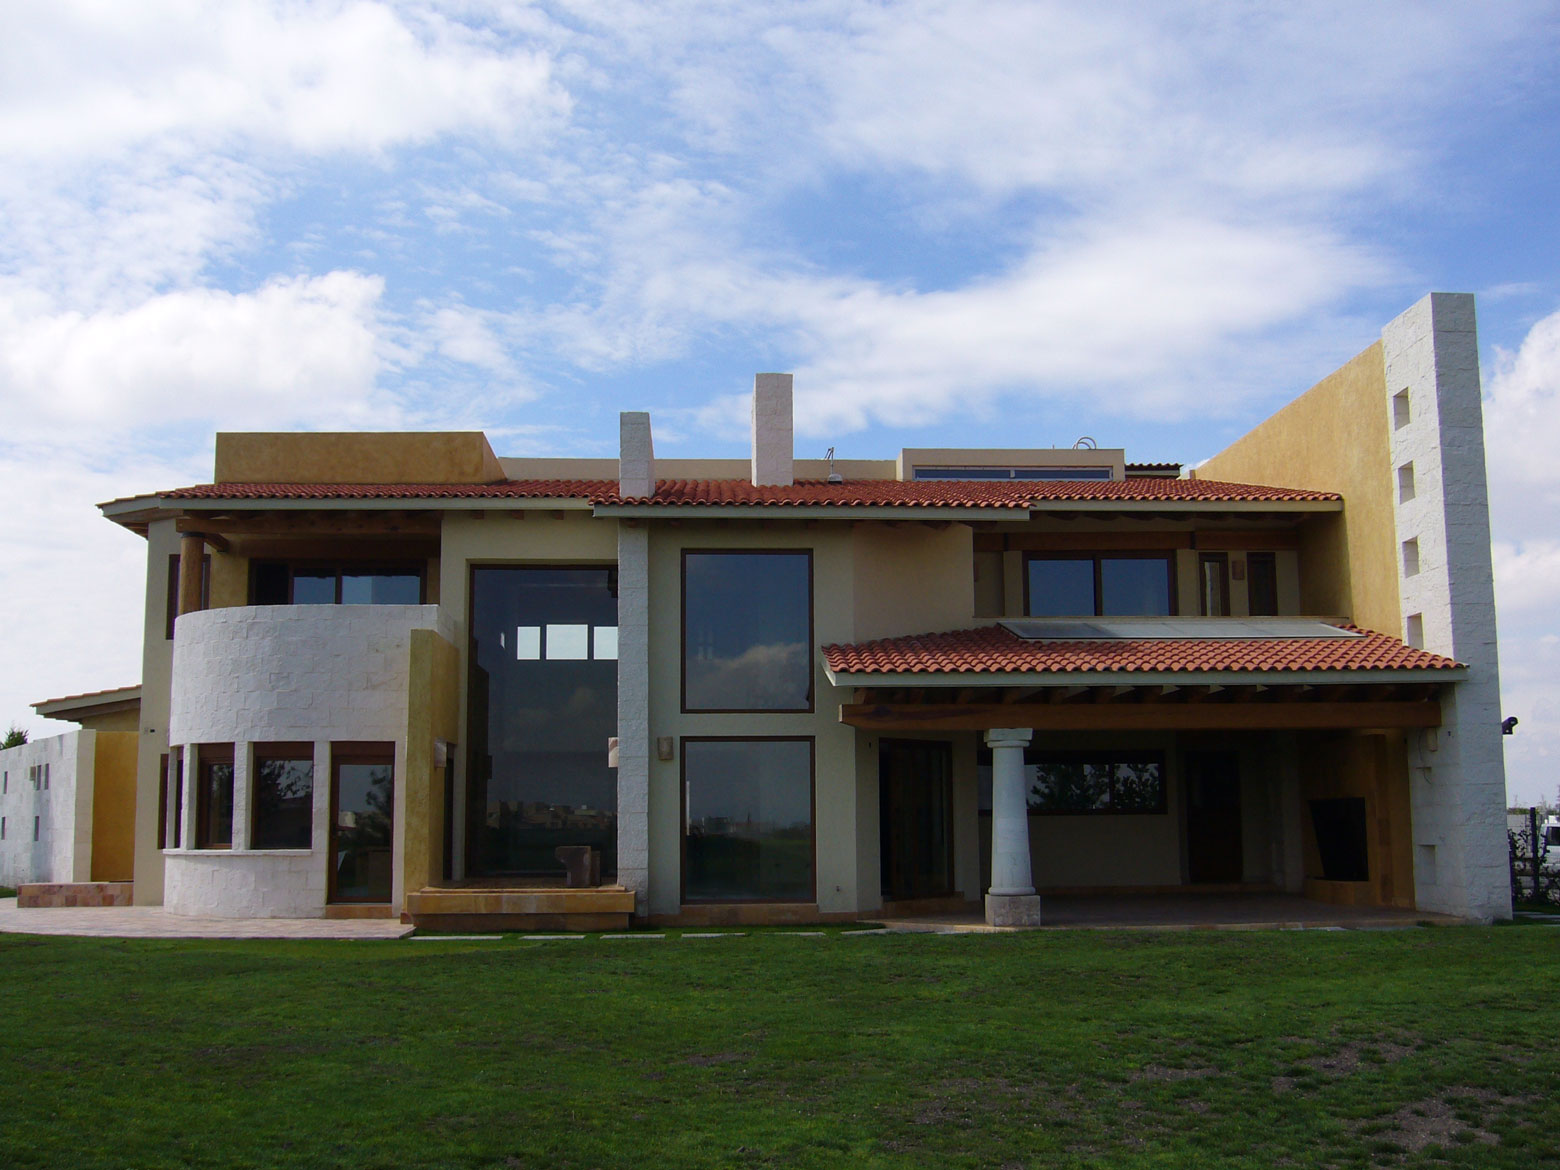 Principal Casa García